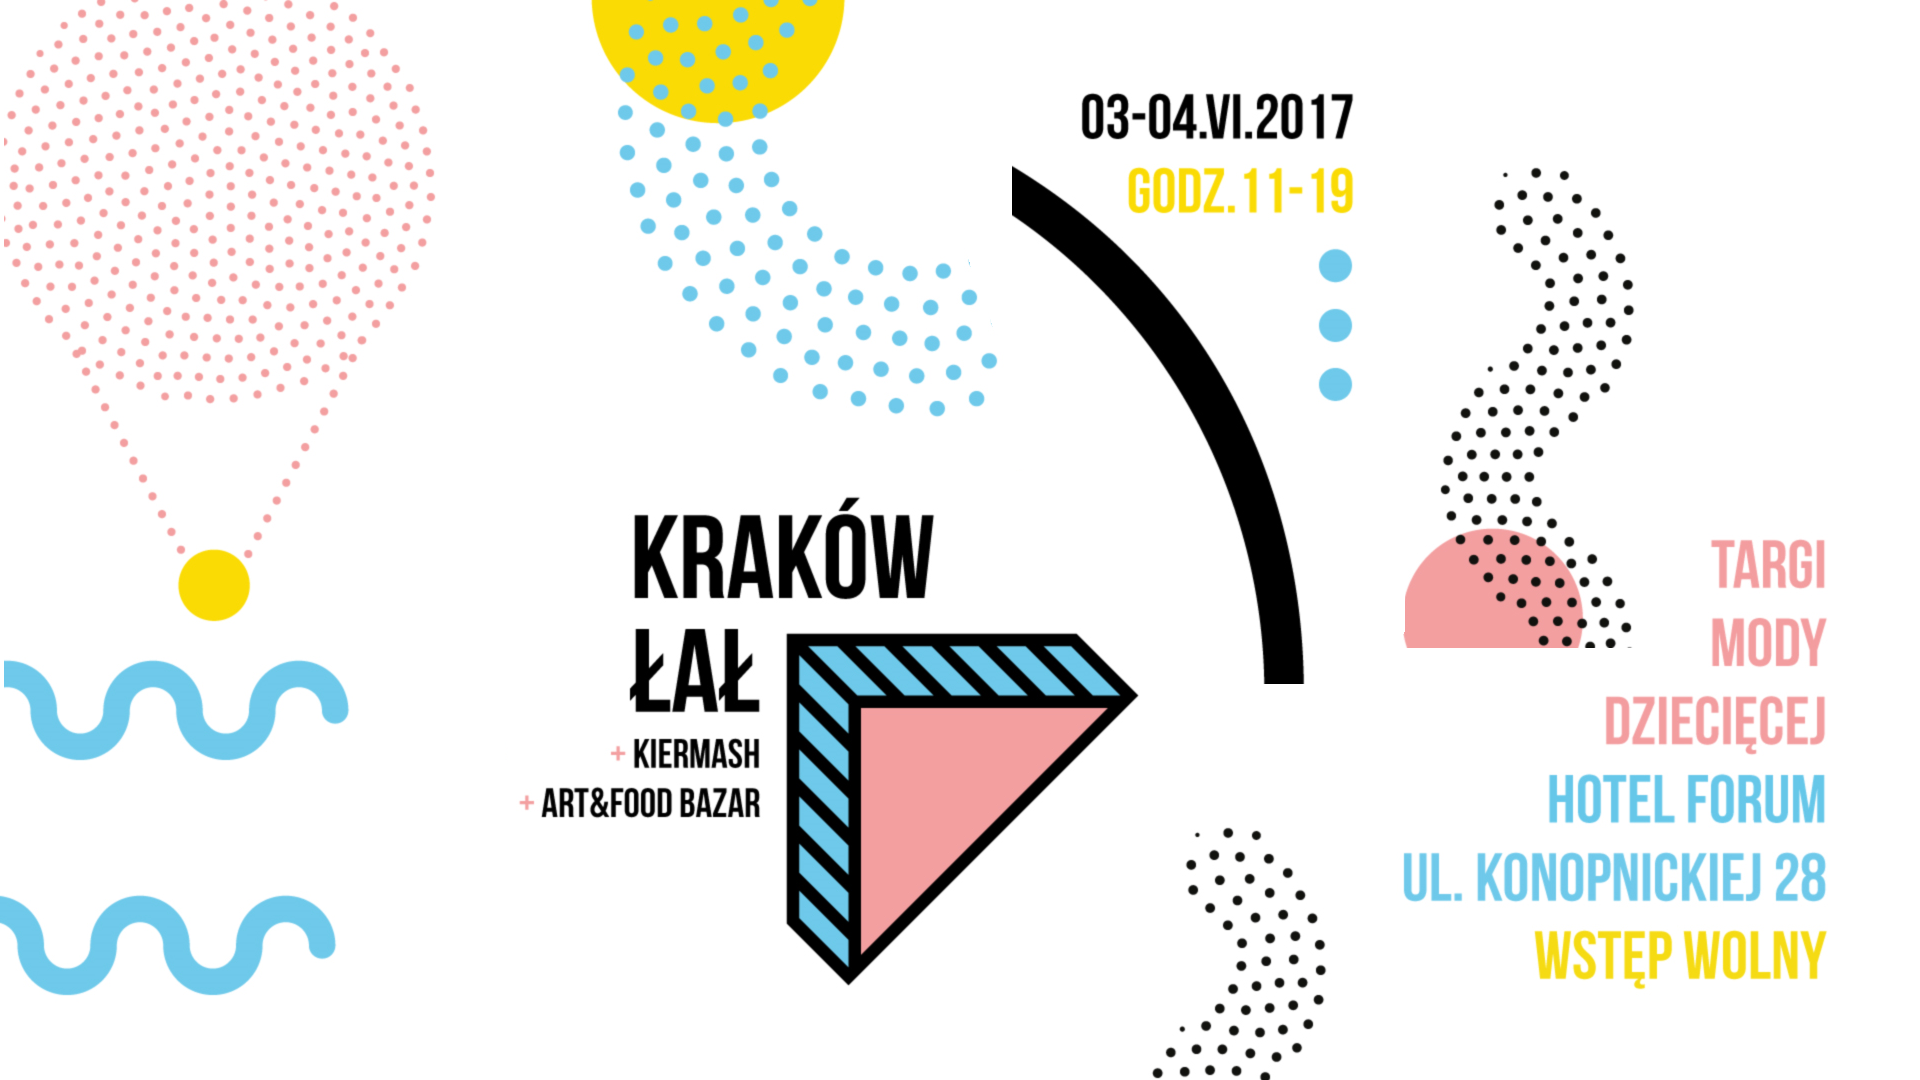 Krakowskie targi mody dziecięcej Kraków ŁAŁ